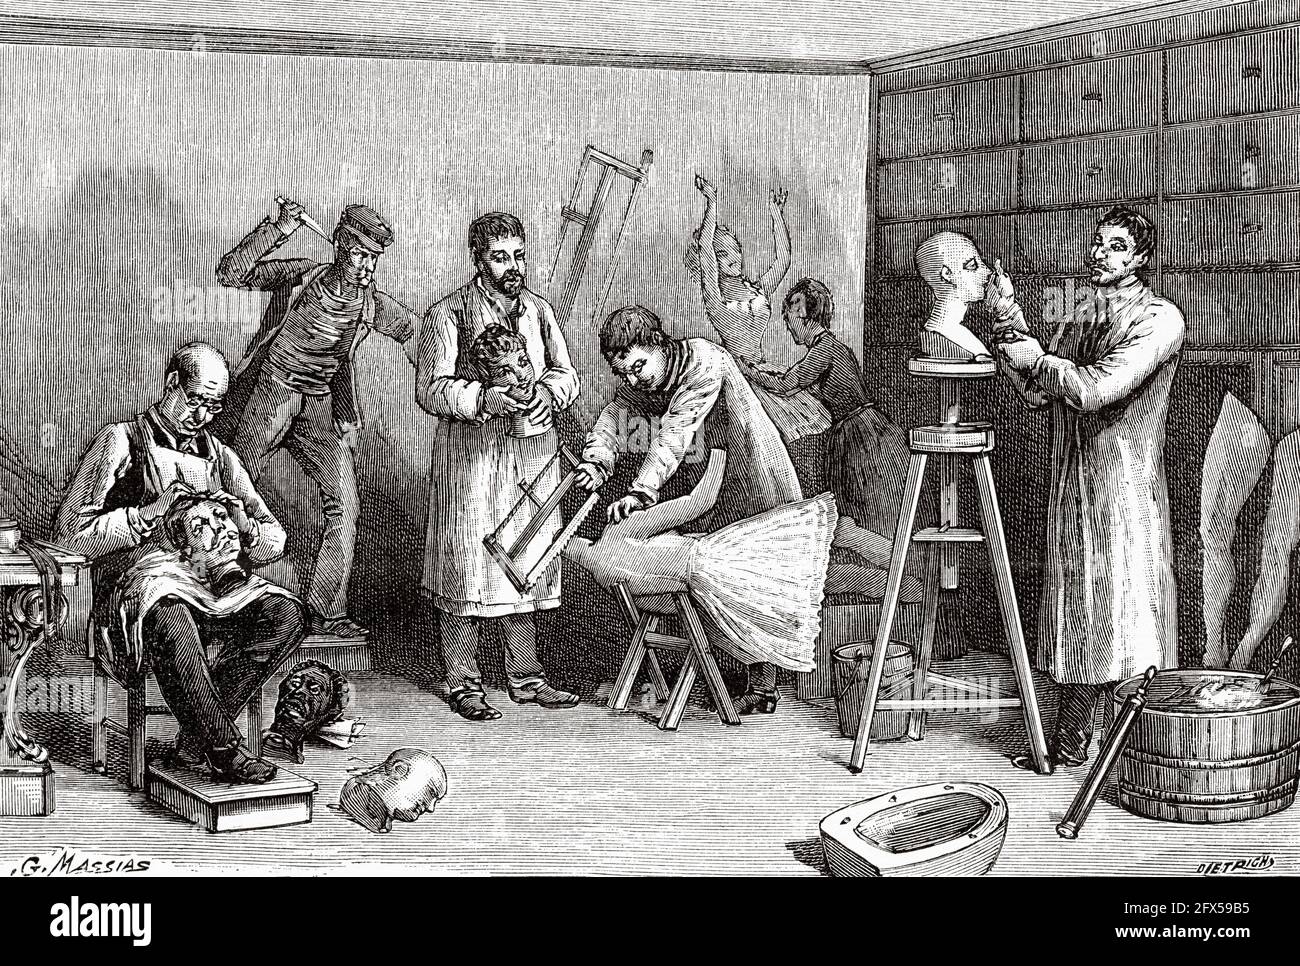 Herstellung von Wachsfiguren im Grevin Museum Paris, Frankreich. Alte, gravierte Illustration aus dem 19. Jahrhundert von La Nature 1893 Stockfoto